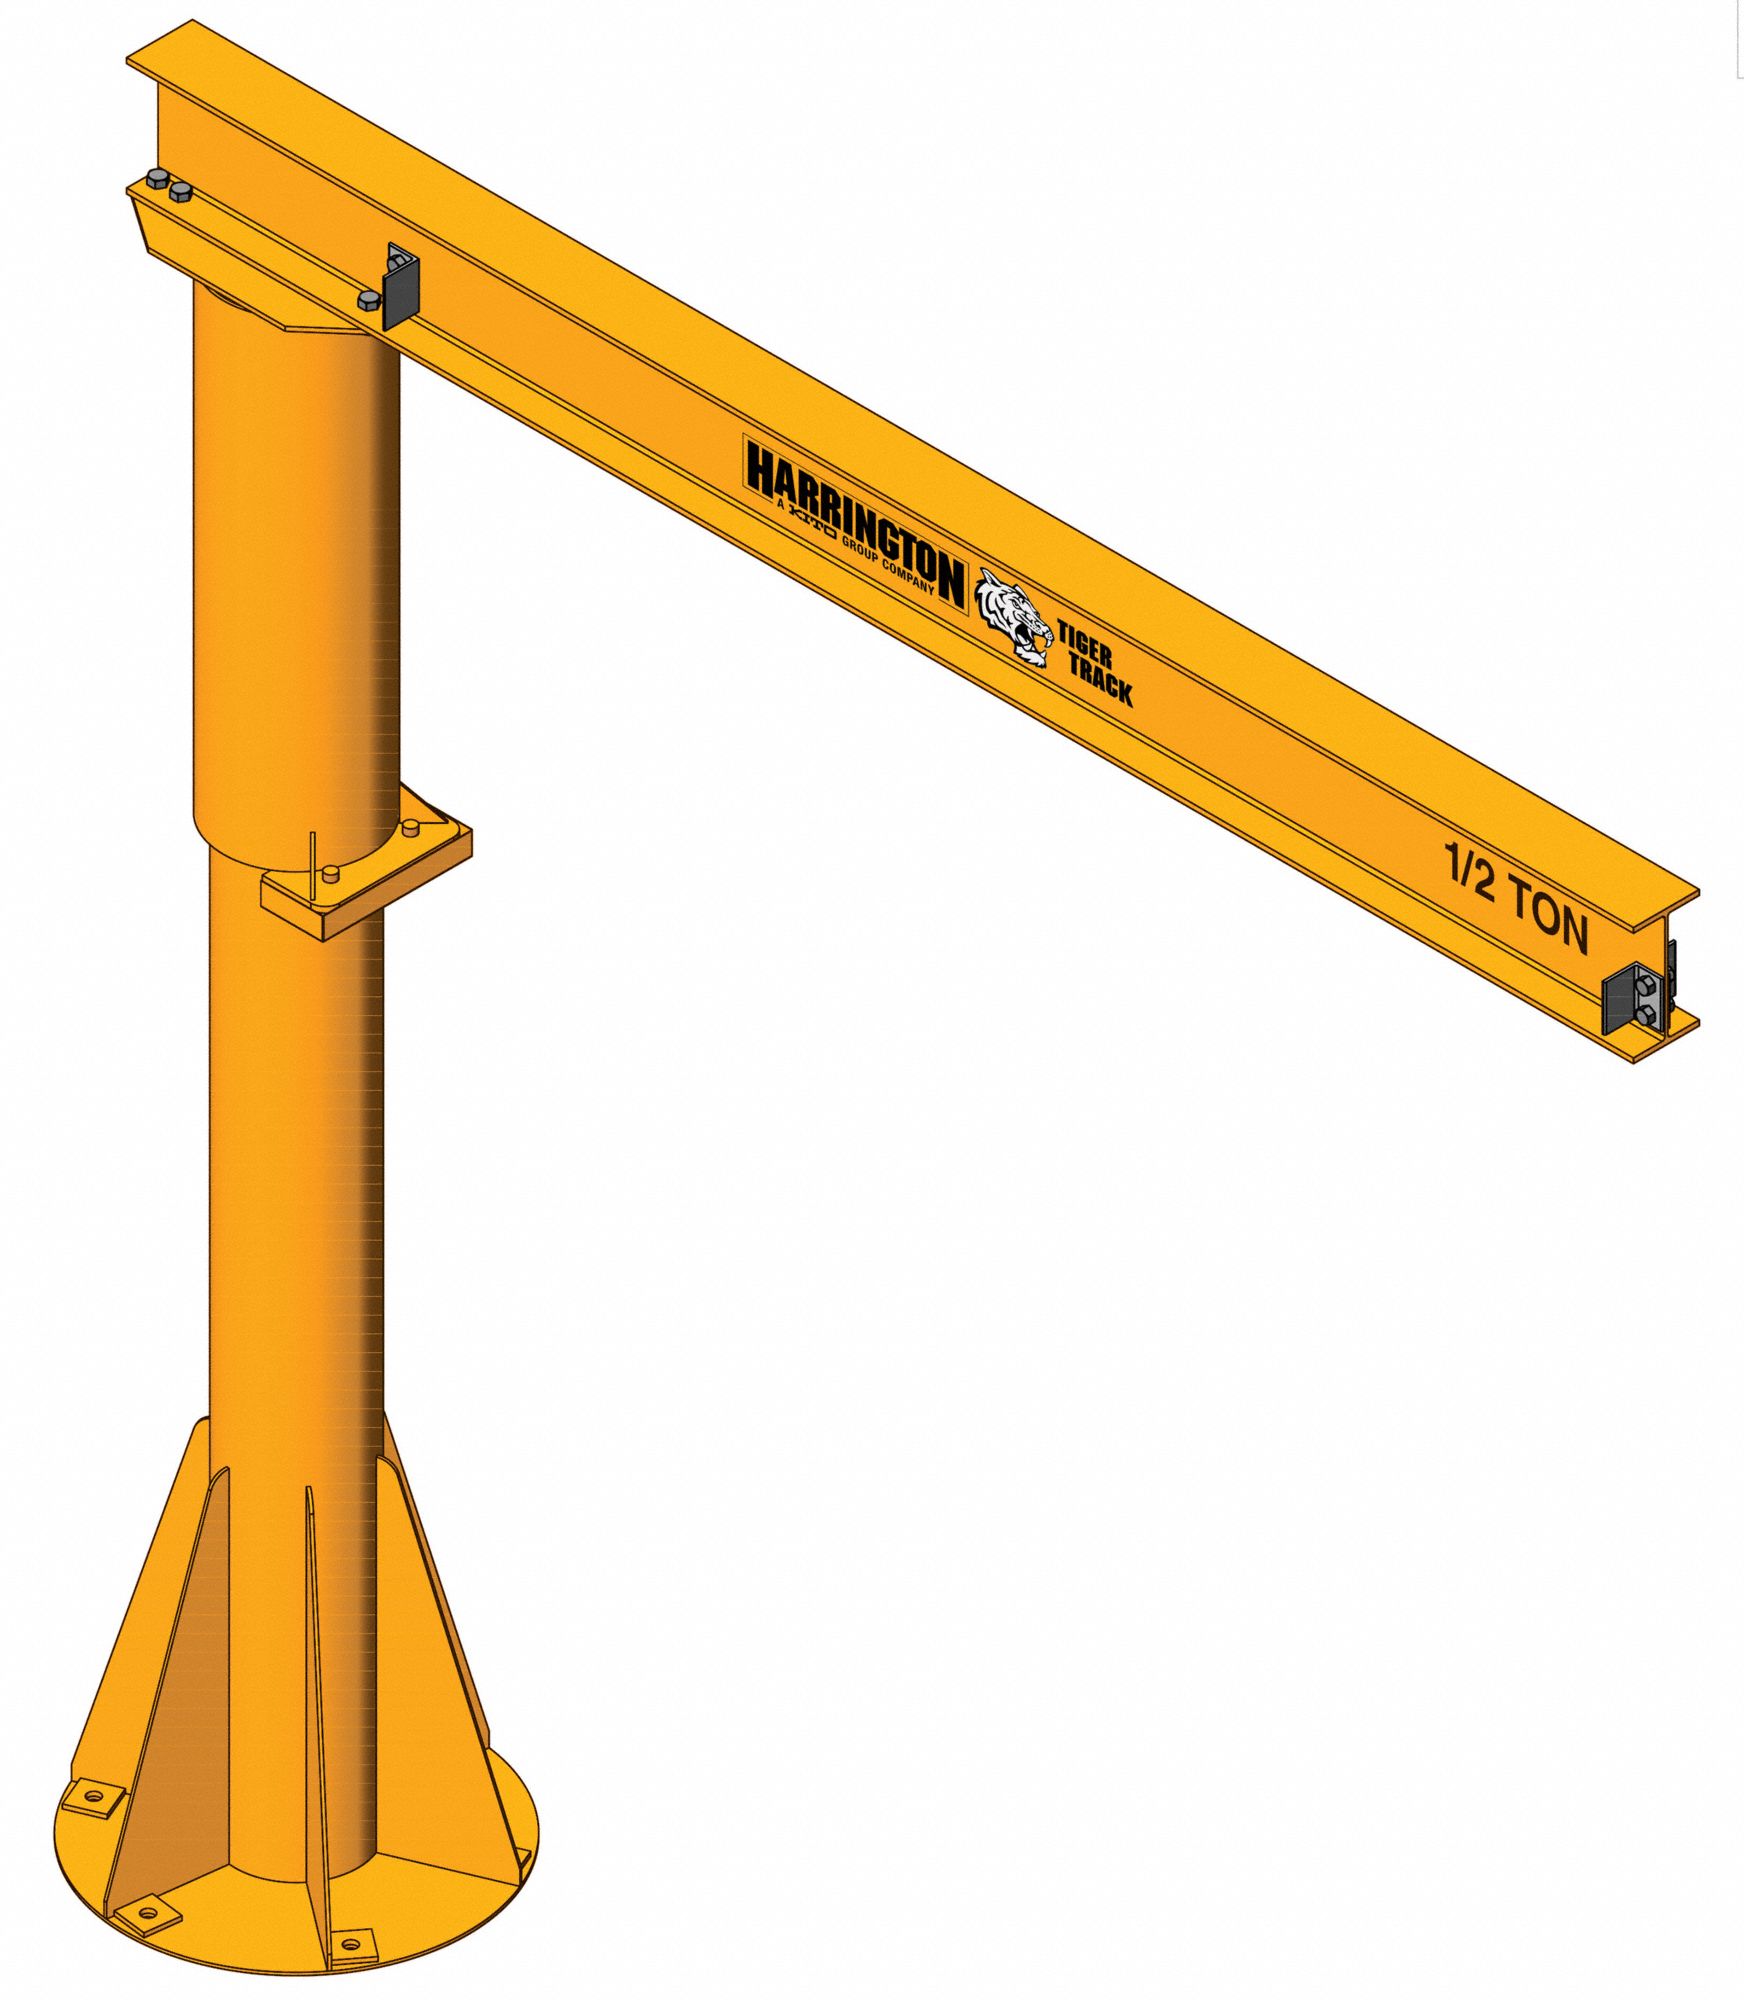 Light Duty Foundationless Jib Crane: 500 lb Capacity, 14 ft Reach, 360° Swivel Angle